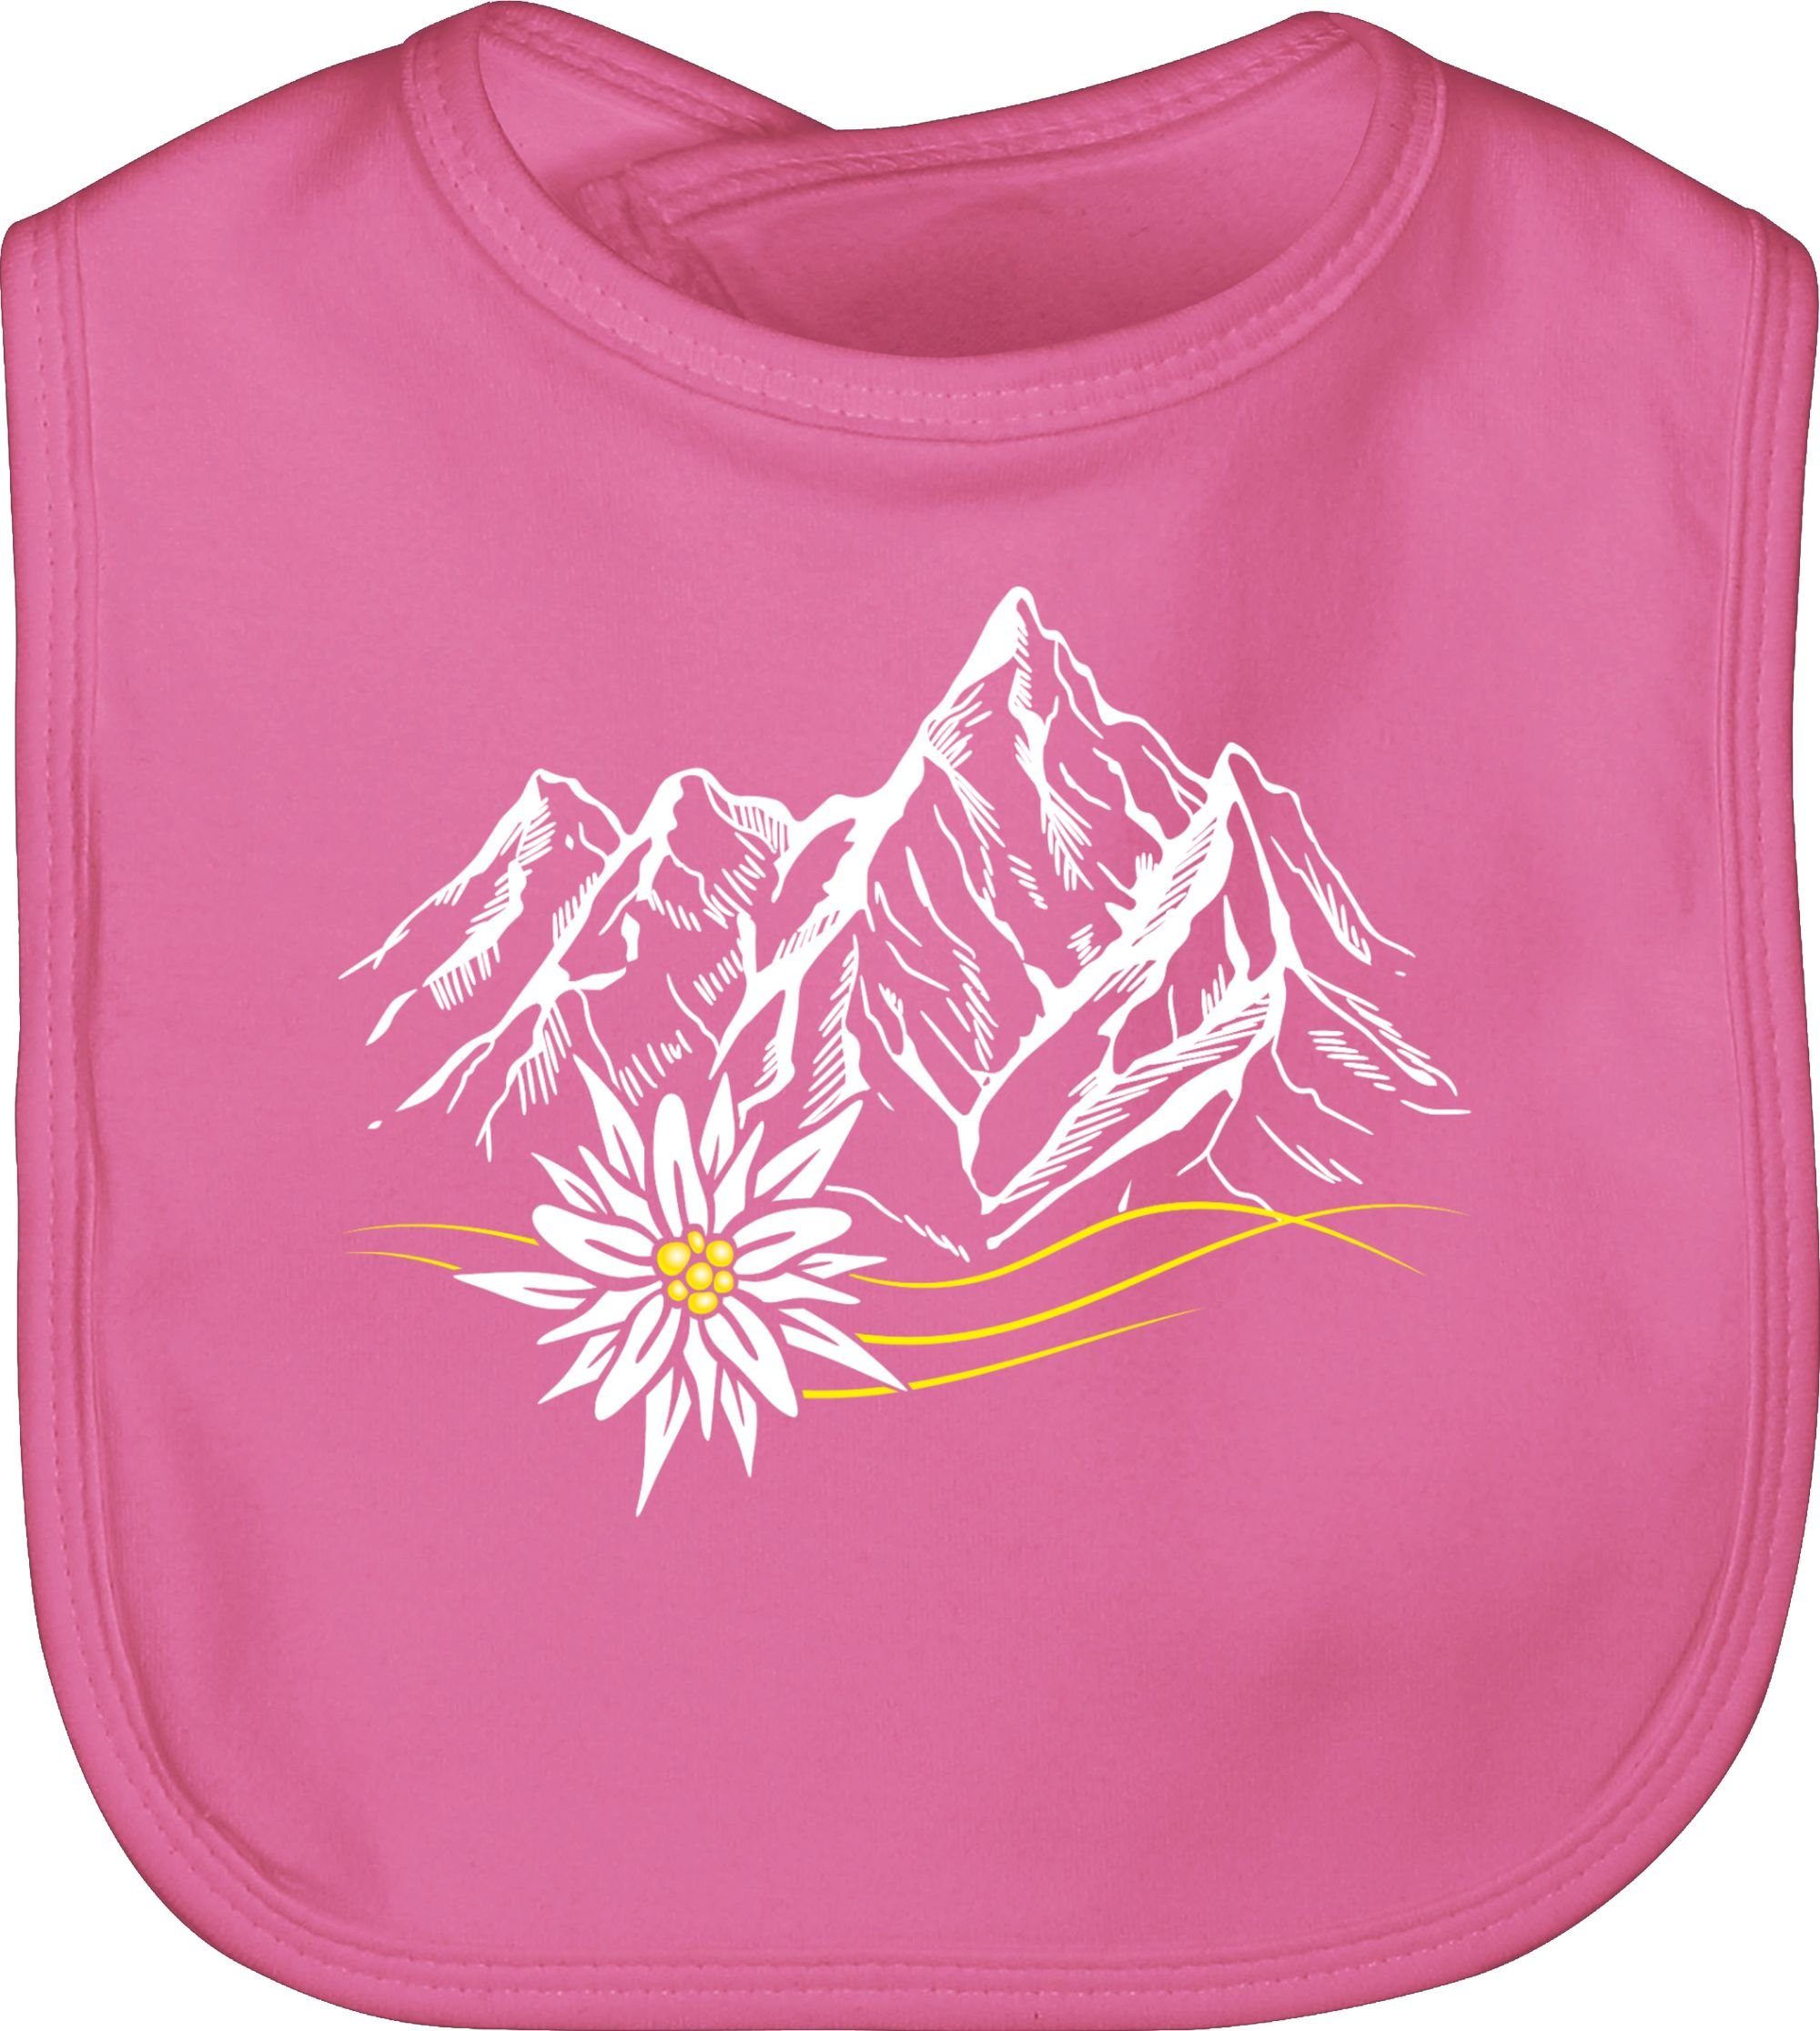 Wandern für Outfit Shirtracer ruft Wanderlust 1 Mode Alpen, Berg Berge Lätzchen Edelweiß Baby Pink Oktoberfest